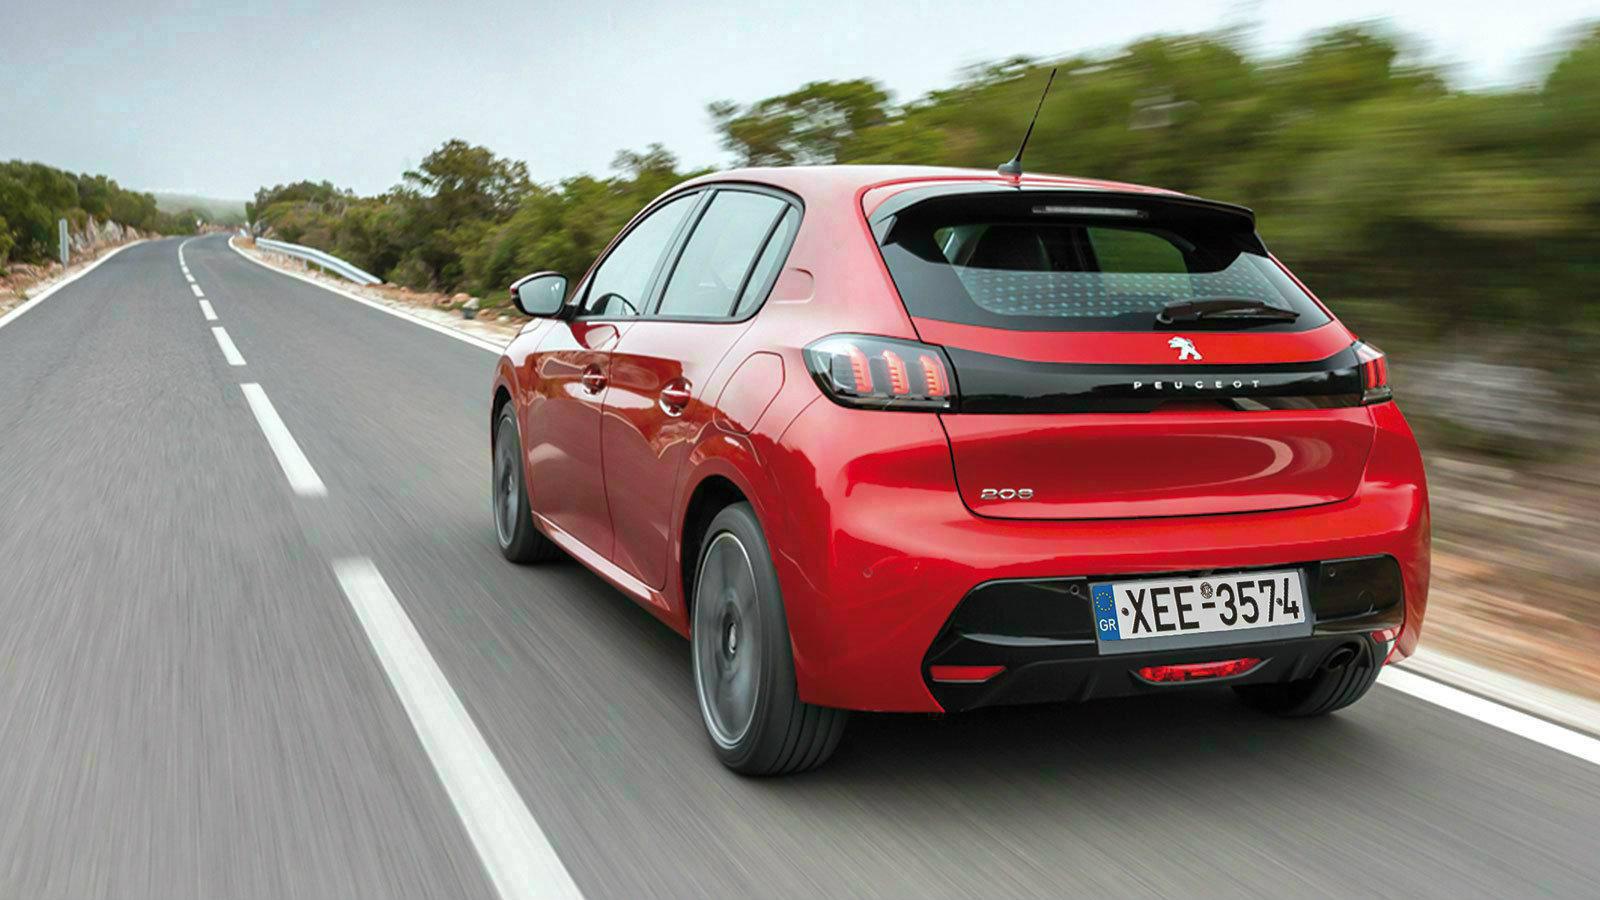 Είναι το νέο Peugeot 208 το κορυφαίο μικρό;